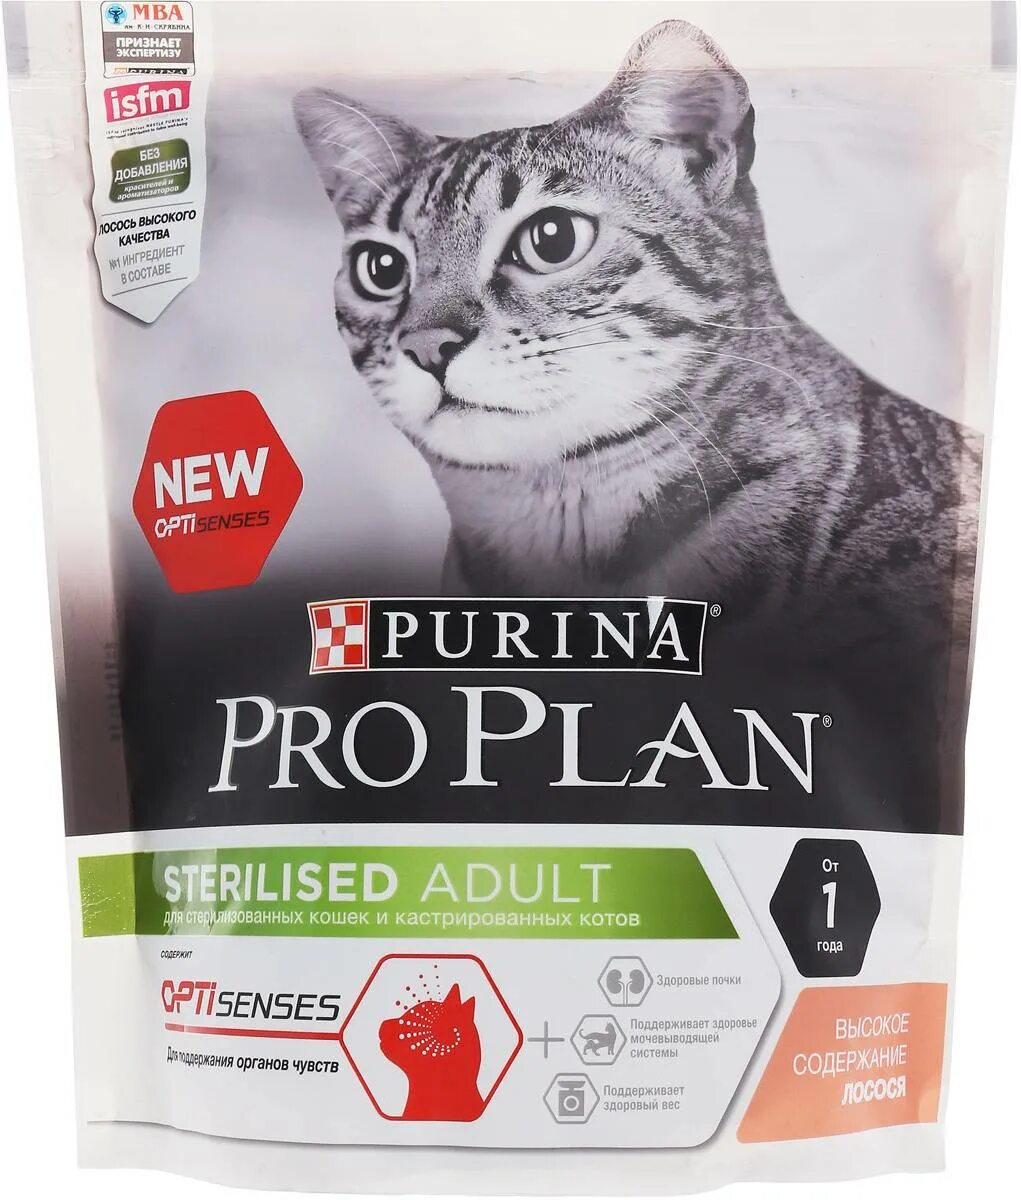 Корм для кошек Пурина Проплан для стерилизованных. Пурина про план корм для кошек стерилизованных сухой Проплан. Корм для кошек Пурина Проплан для стерилизованных кошек. Purina PROPLAN для кастрированных кошек. Pro plan для стерилизованных котов